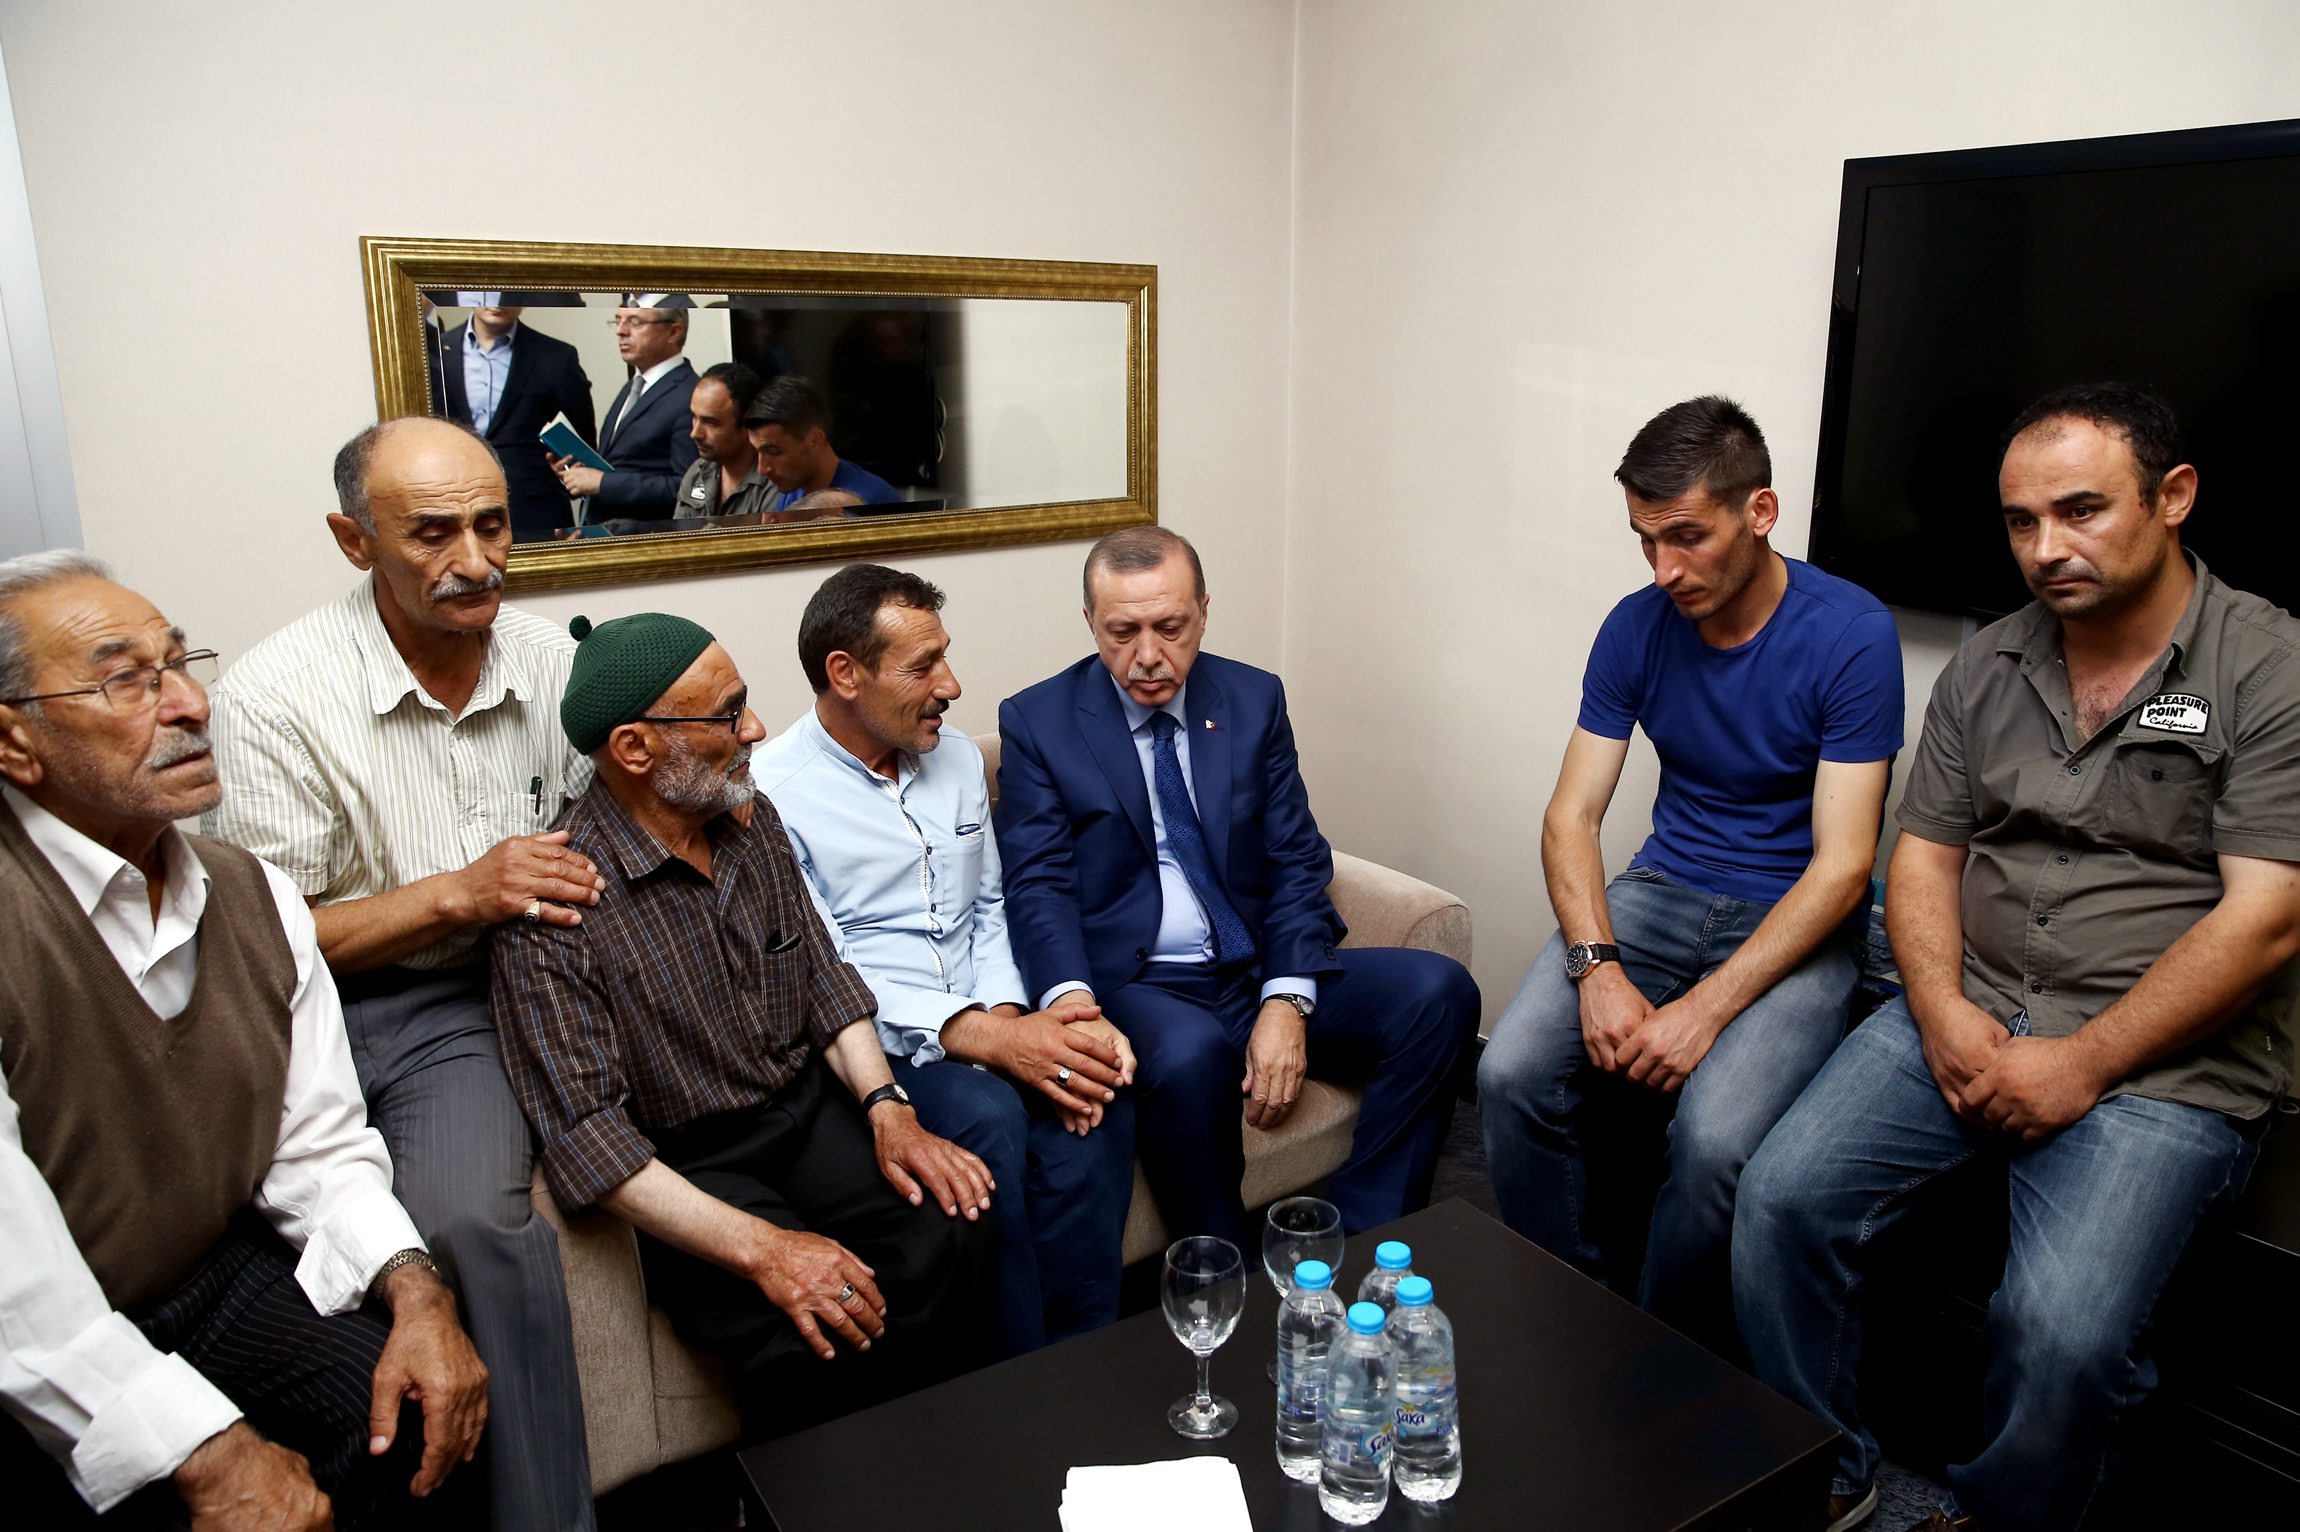 Cumhurbaşkanı Recep Tayyip Erdoğan, 15 Temmuz'da yaşanan darbe girişiminde, Cumhurbaşkanlığı Külliyesi önündeki bombardımanda yaralanan ve 3 Ağustos Çarşamba akşamı vefat eden demokrasi şehidi Oğuzhan Yaşar'ın ailesine taziye ziyaretinde bulundu.